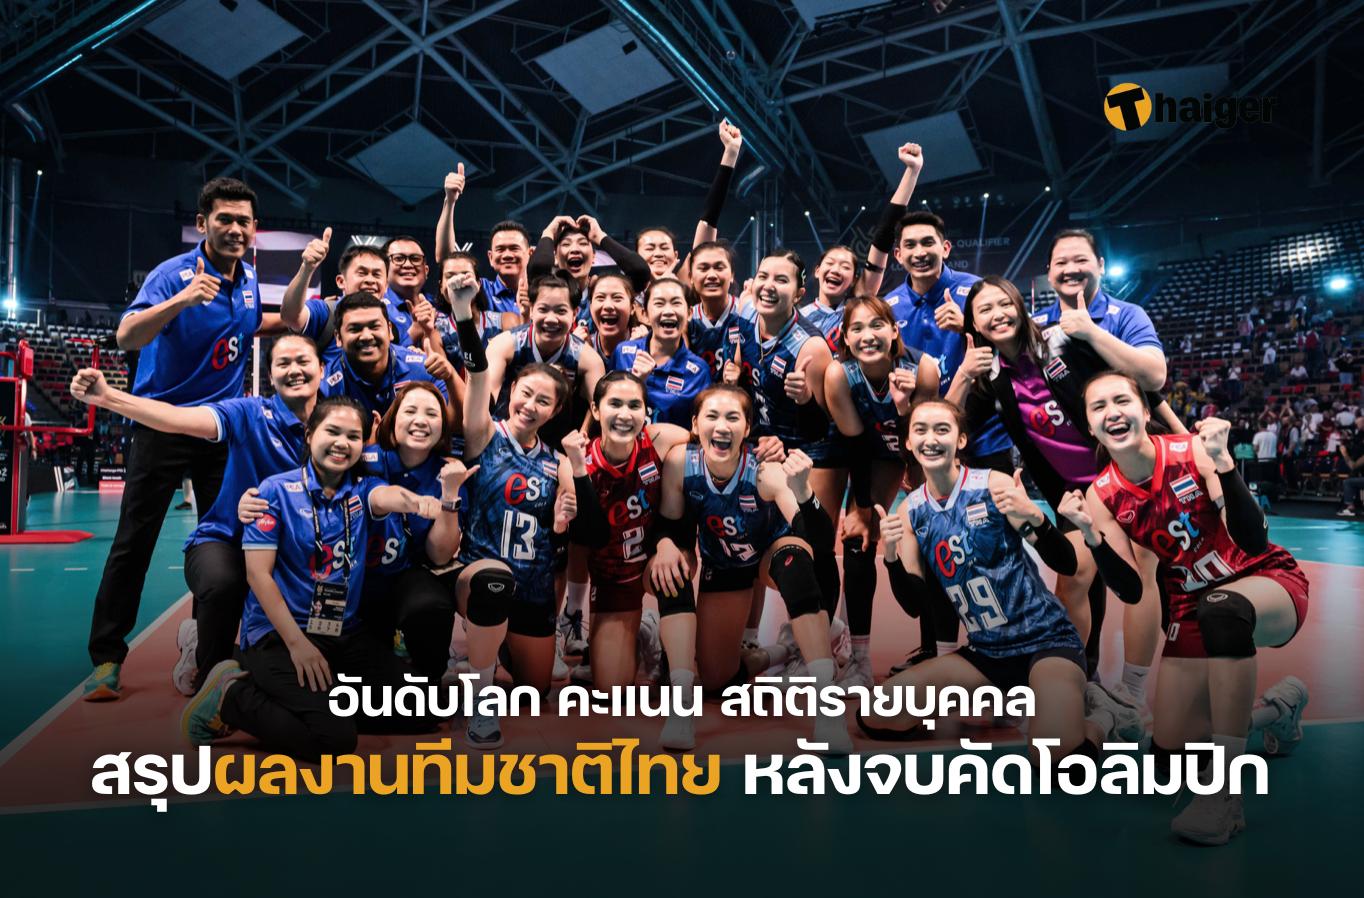 สรุปผลงานวอลเลย์บอลหญิงทีมชาติไทย หลังจบคัดโอลิมปิก